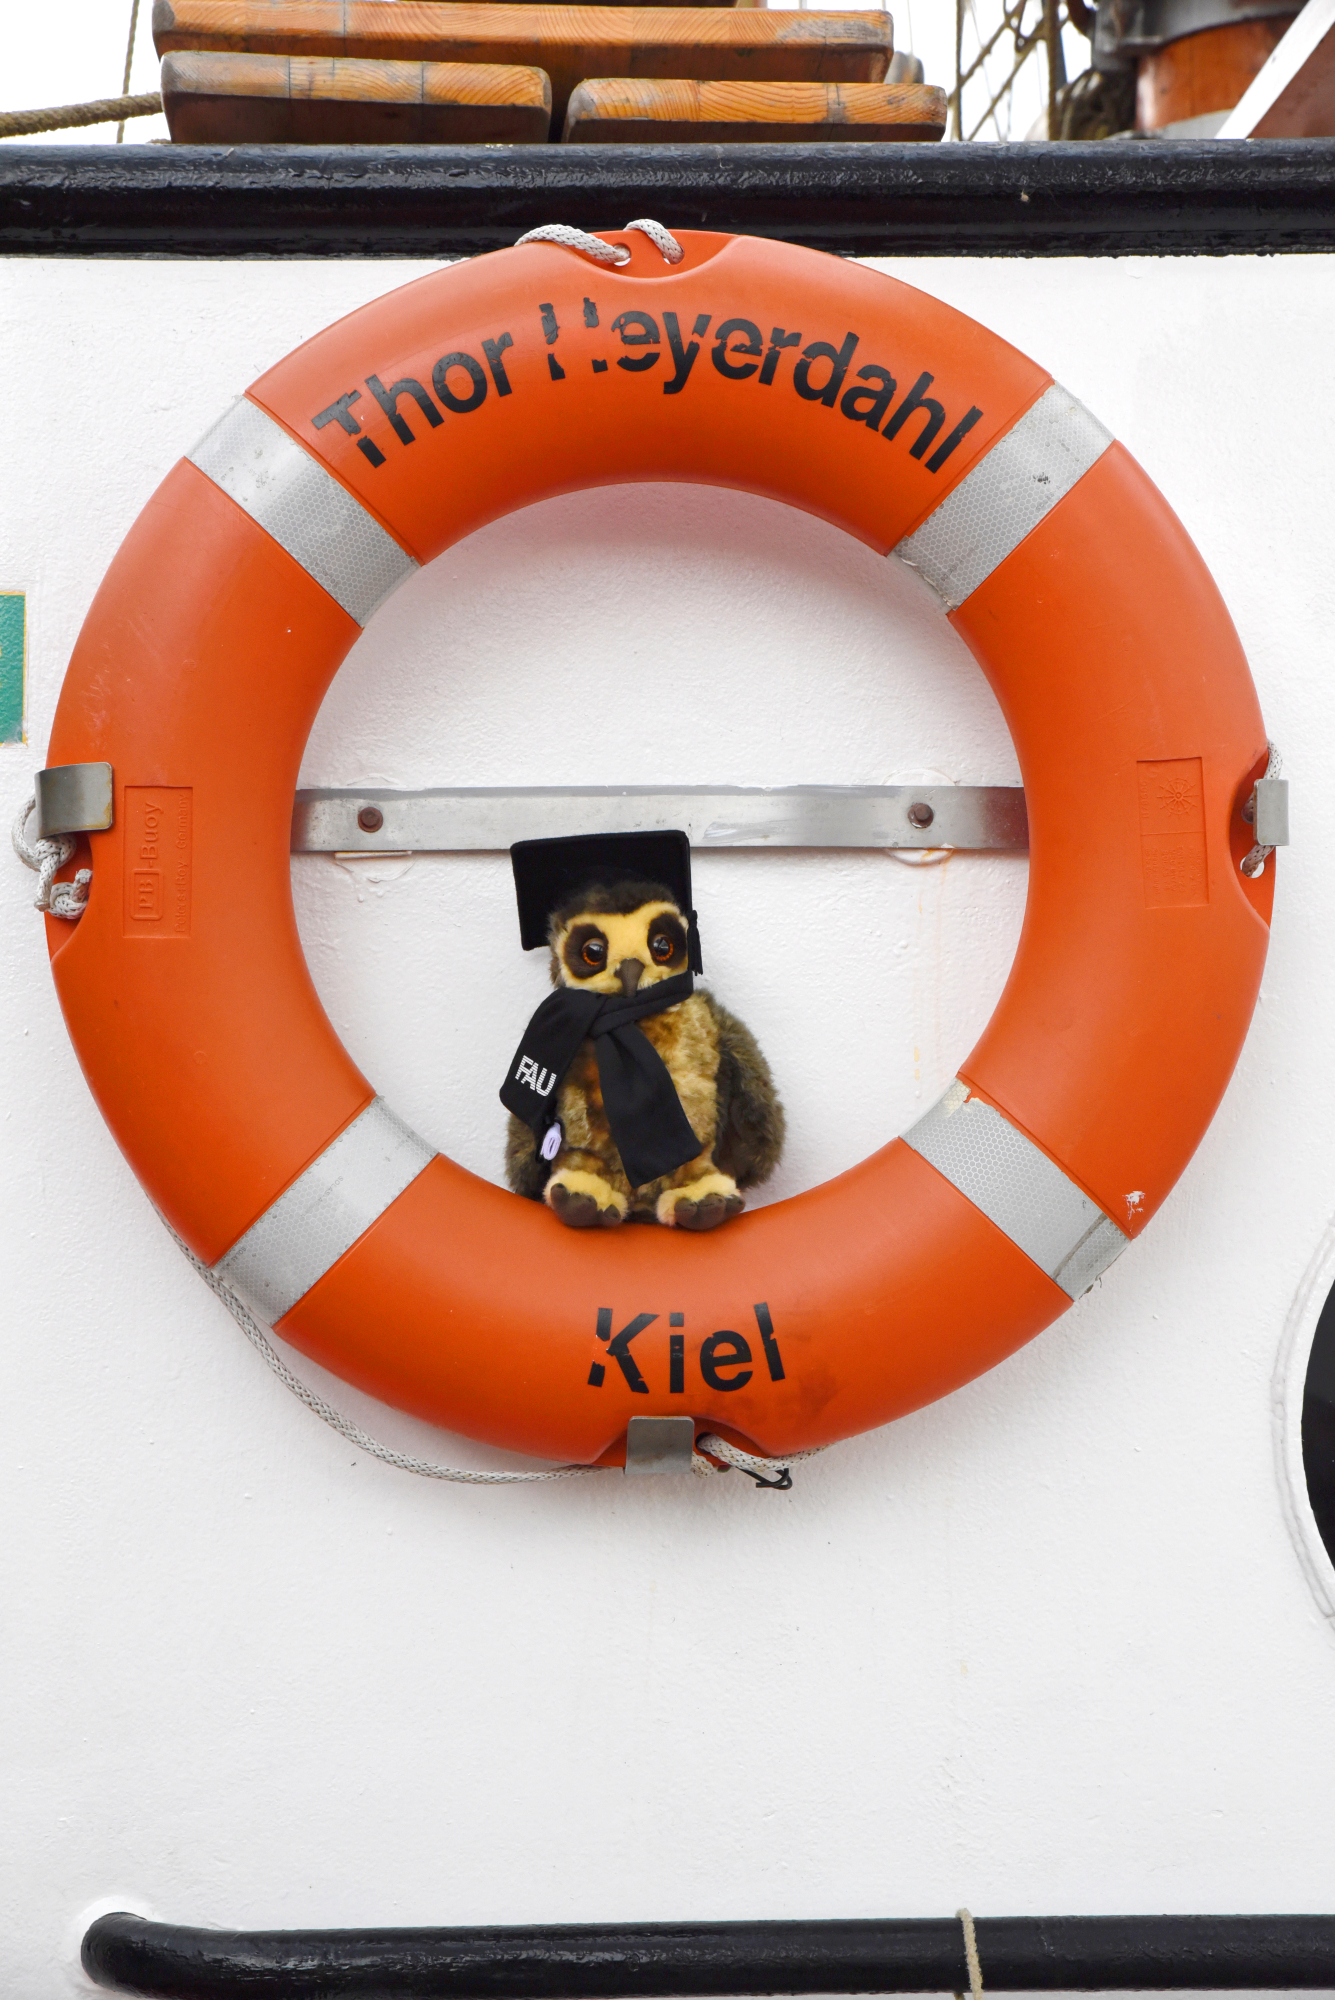 Die FAU-Eule im Rettungsring dem Segelschiff Thor Heyerdahl. (Bild: FAU/Regine Oyntzen)